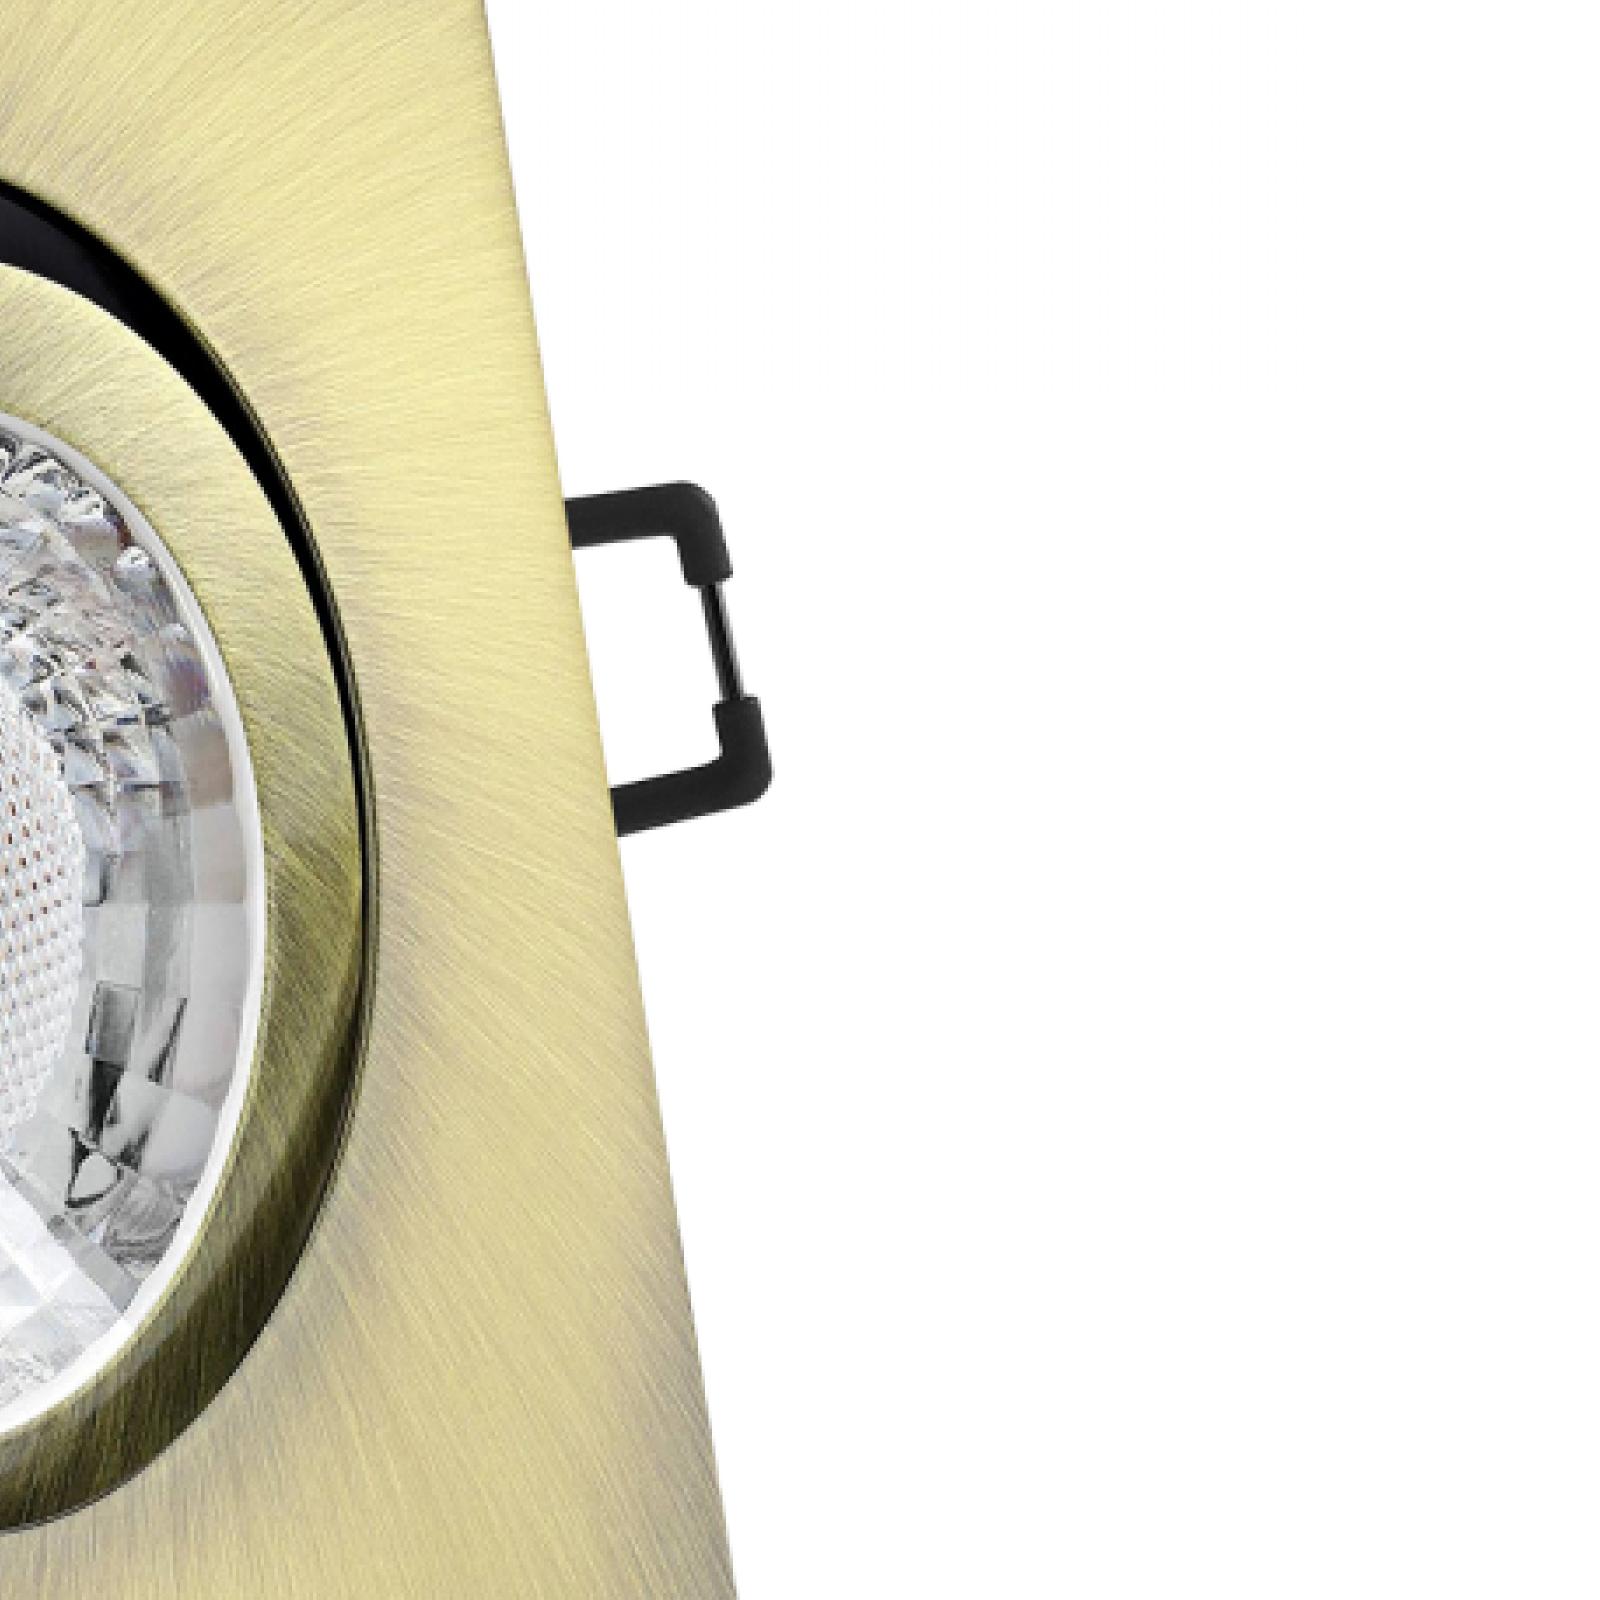 LED Einbaustrahler Altmessing gebürstet | Quadratischer Einbauspot | 30° schwenkbar | Lochmaß Ø 68mm - 80mm | geringe Einbautiefe 25mm | Anschlussfertig 